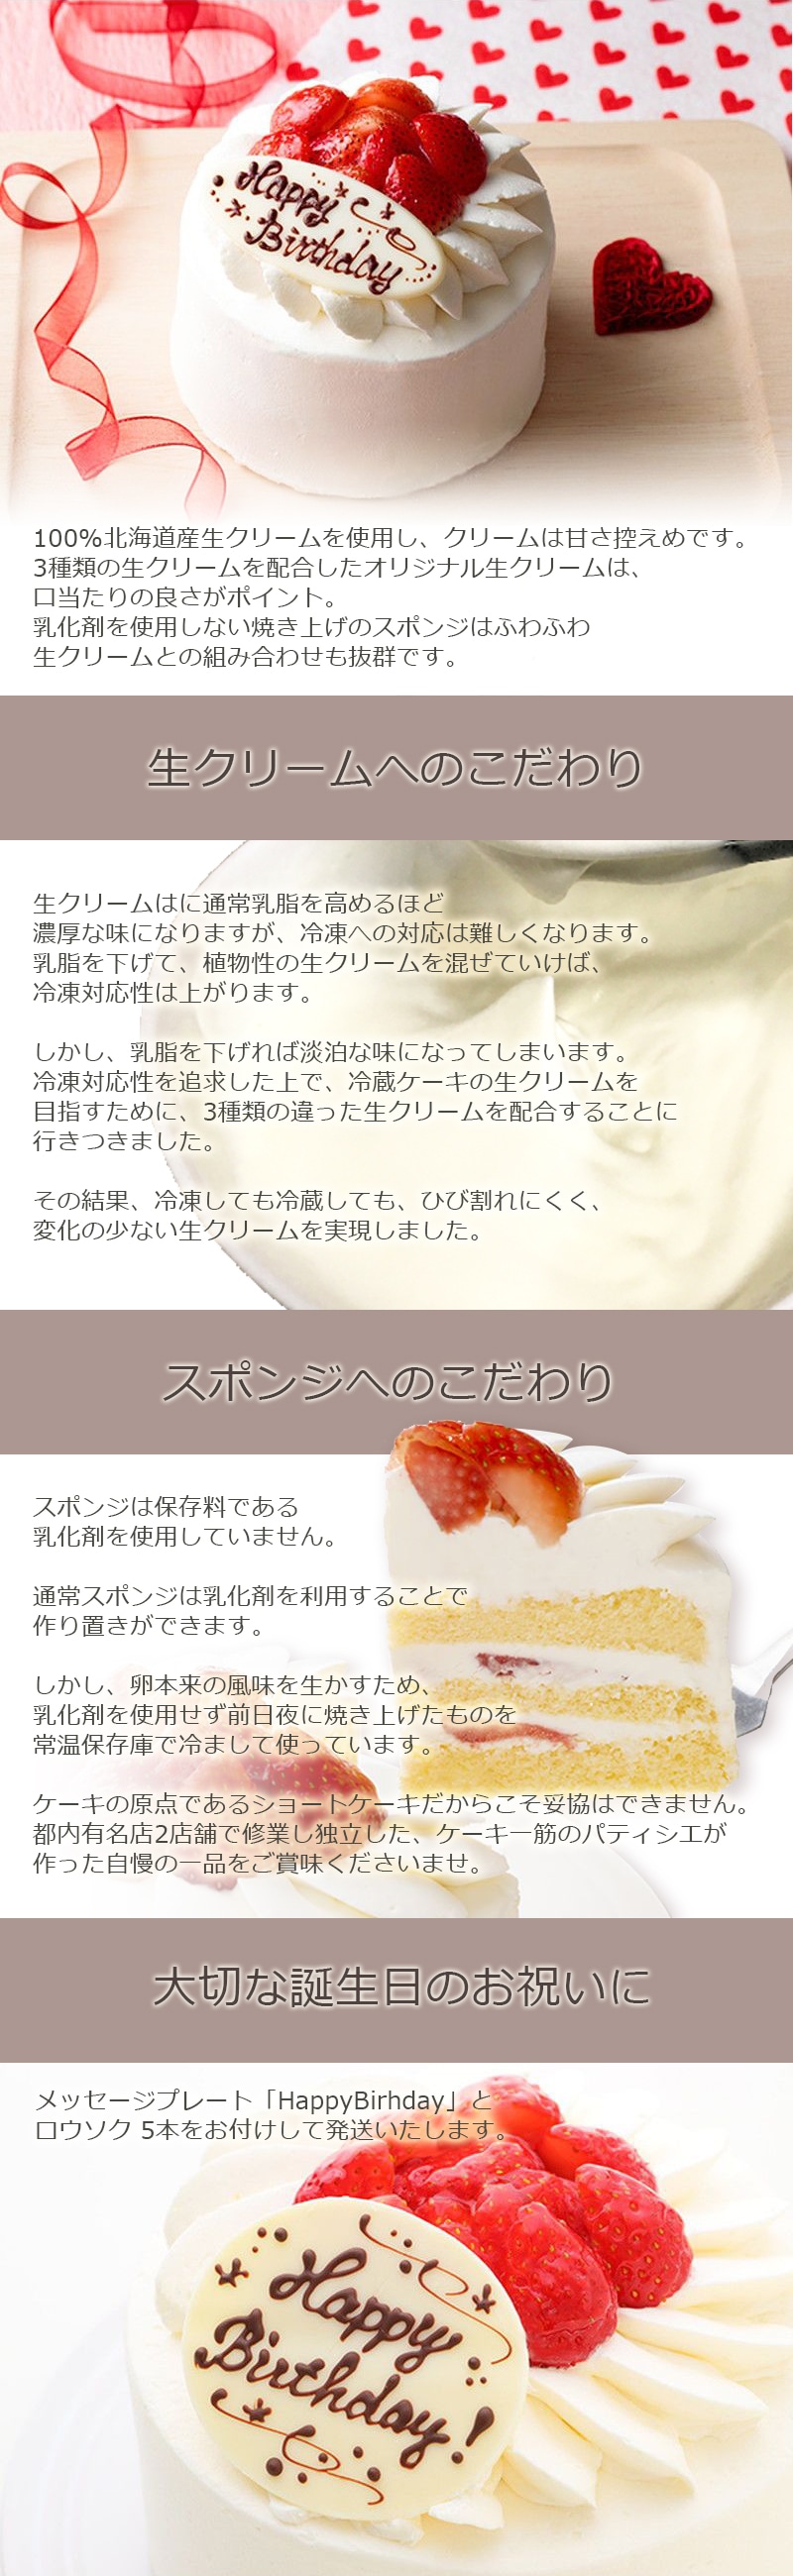 イチゴ生デコレーションケーキ3号 カテゴリーで選ぶ 果物 菓子 スイーツ ギフト百花 本店